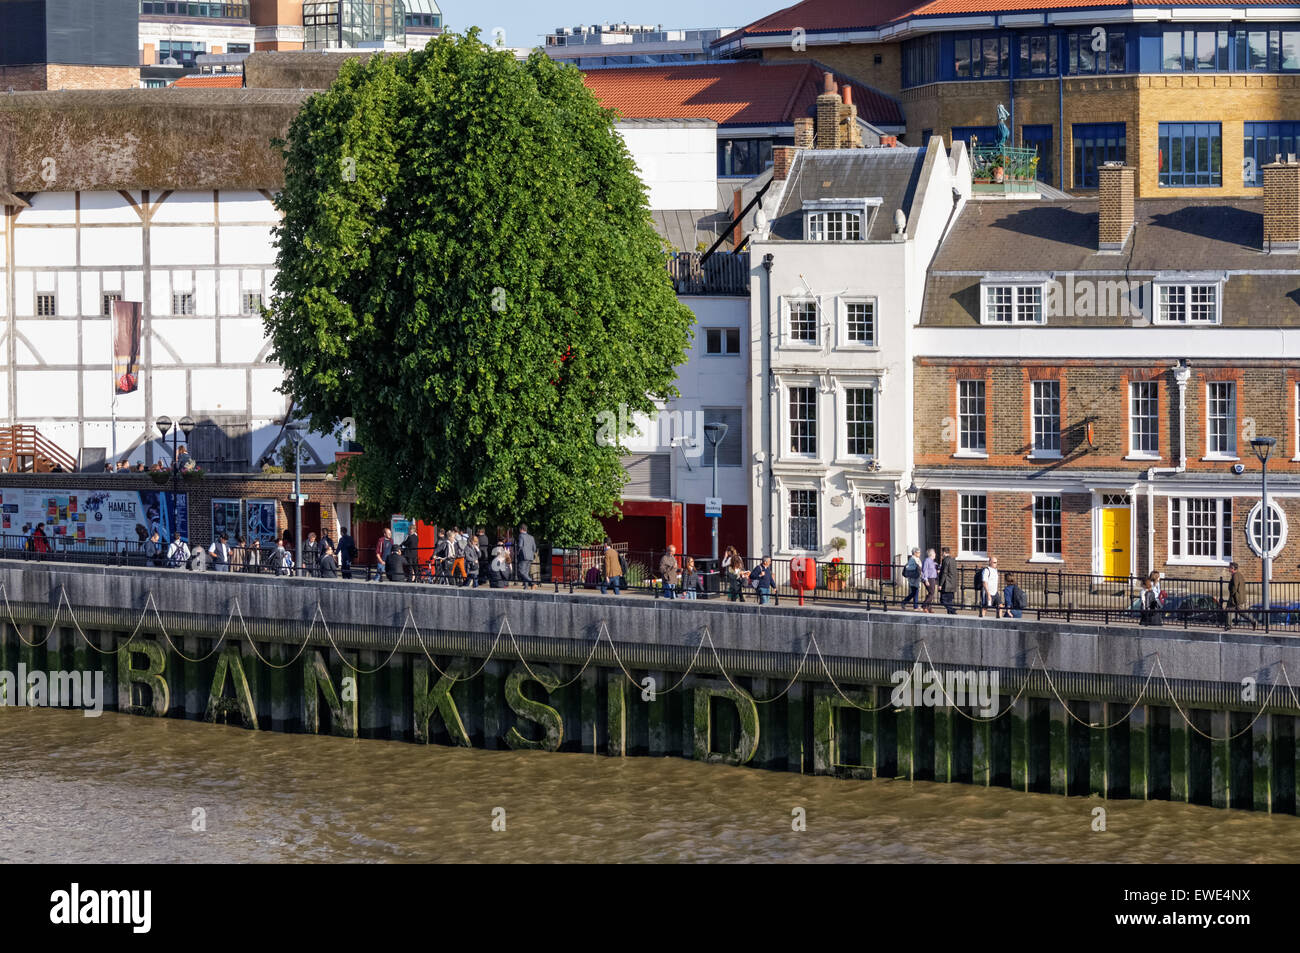 Vue sur le Bankside sur la rive sud de la Tamise, Londres Angleterre Royaume-Uni UK Banque D'Images